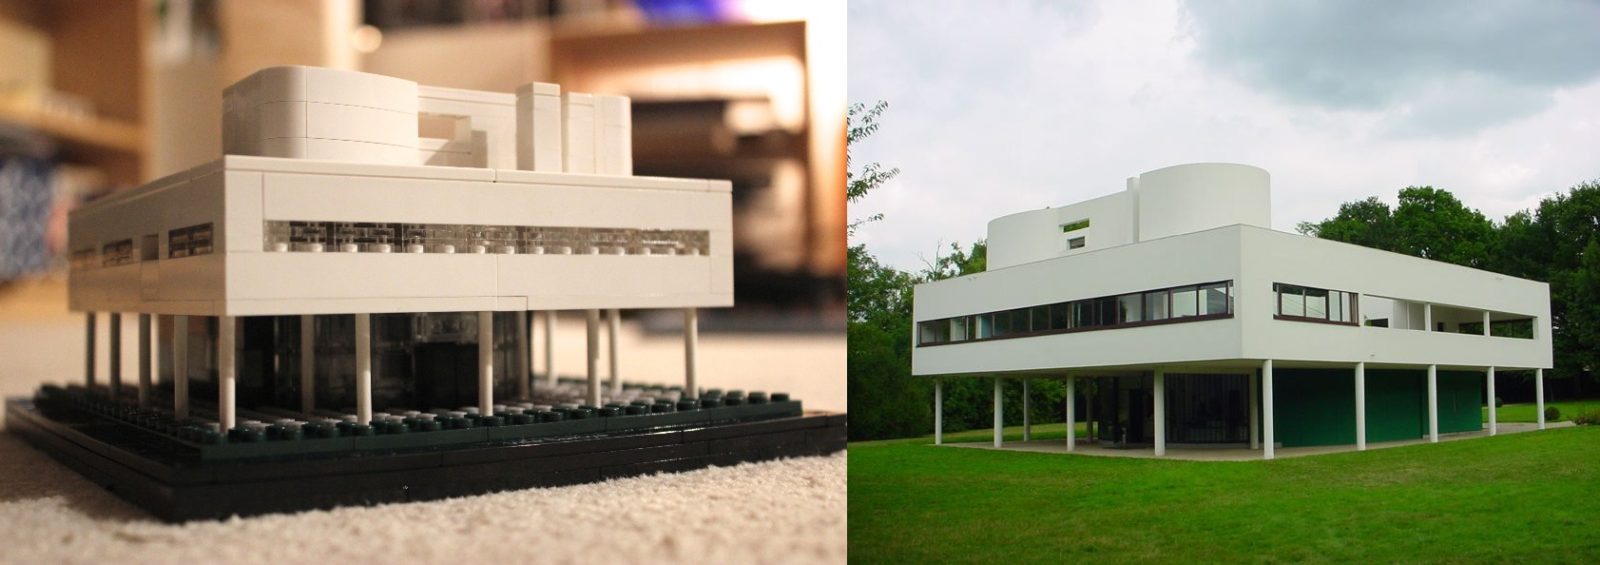 jorden gå på pension bekvemmelighed LEGO Architecture: Build Your Very Own Modernist House | DailyArt